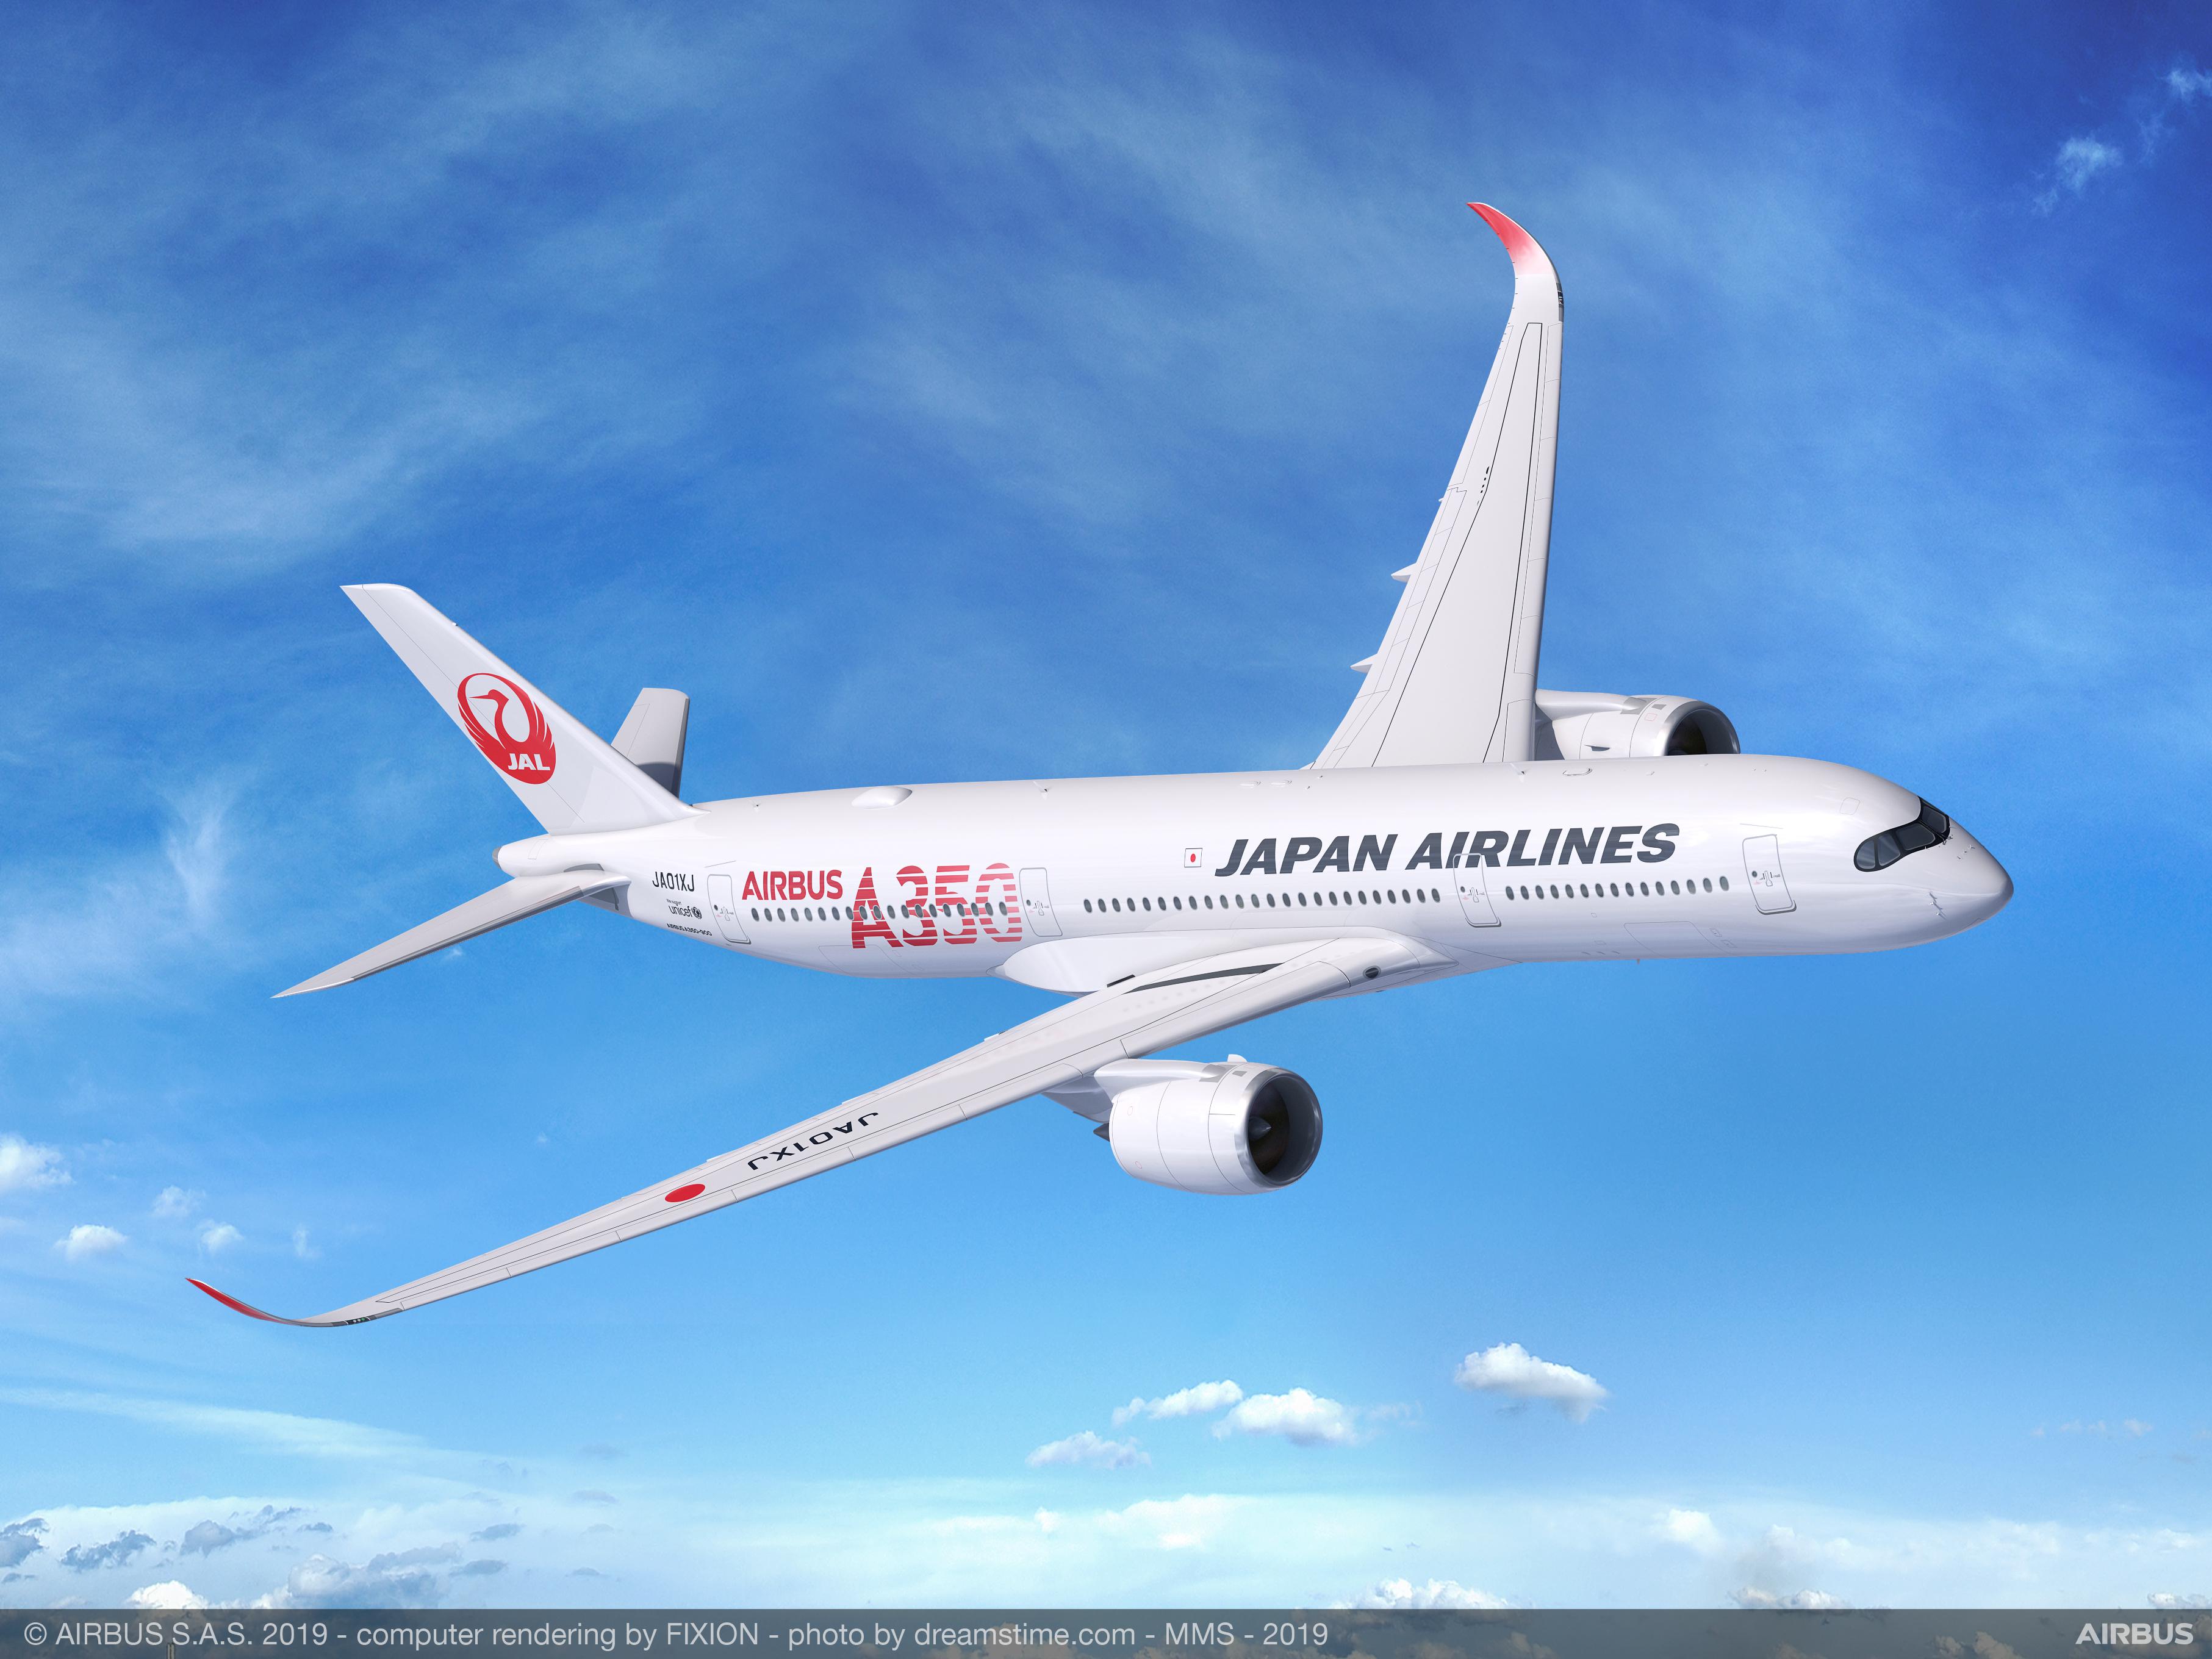 Le 1er A350-900 de JAL décollera le 1er septembre